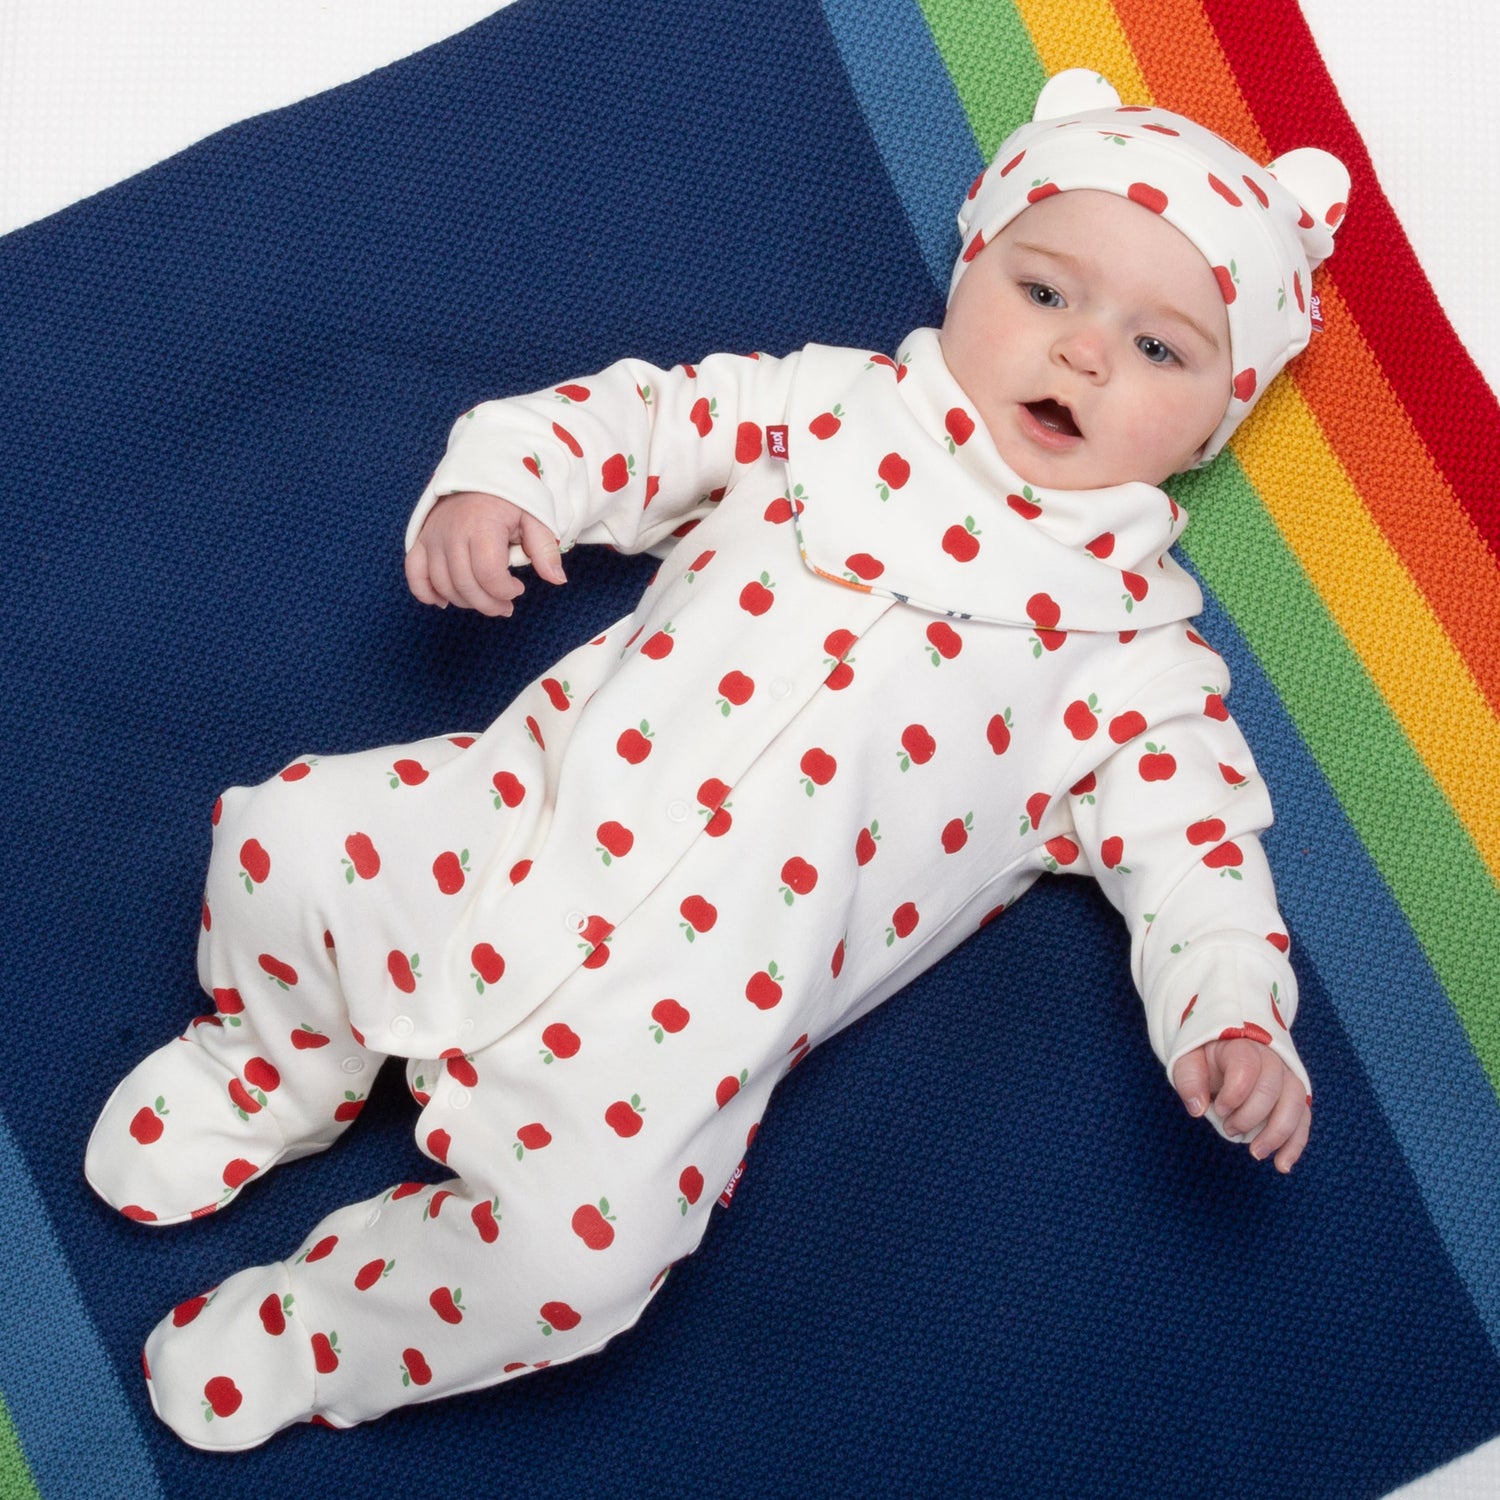 Baby wearing apple dot sleepsuit